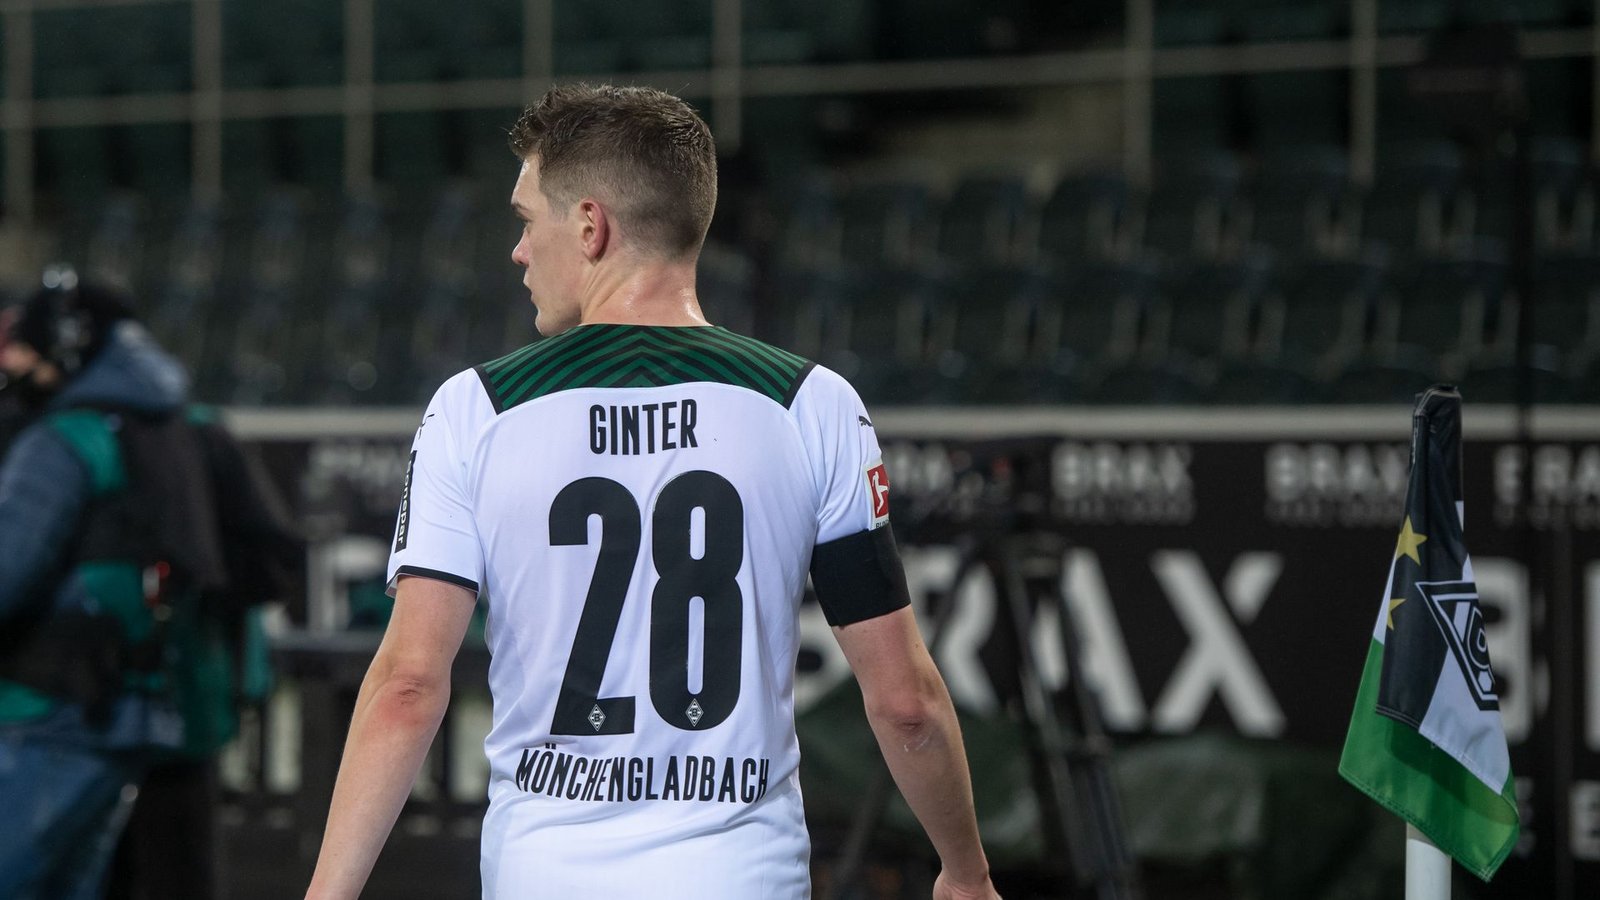 Wechselt im Sommer zu seinem Ausbildungsverein SC Freiburg: Matthias Ginter.Foto: Bernd Thissen/dpa